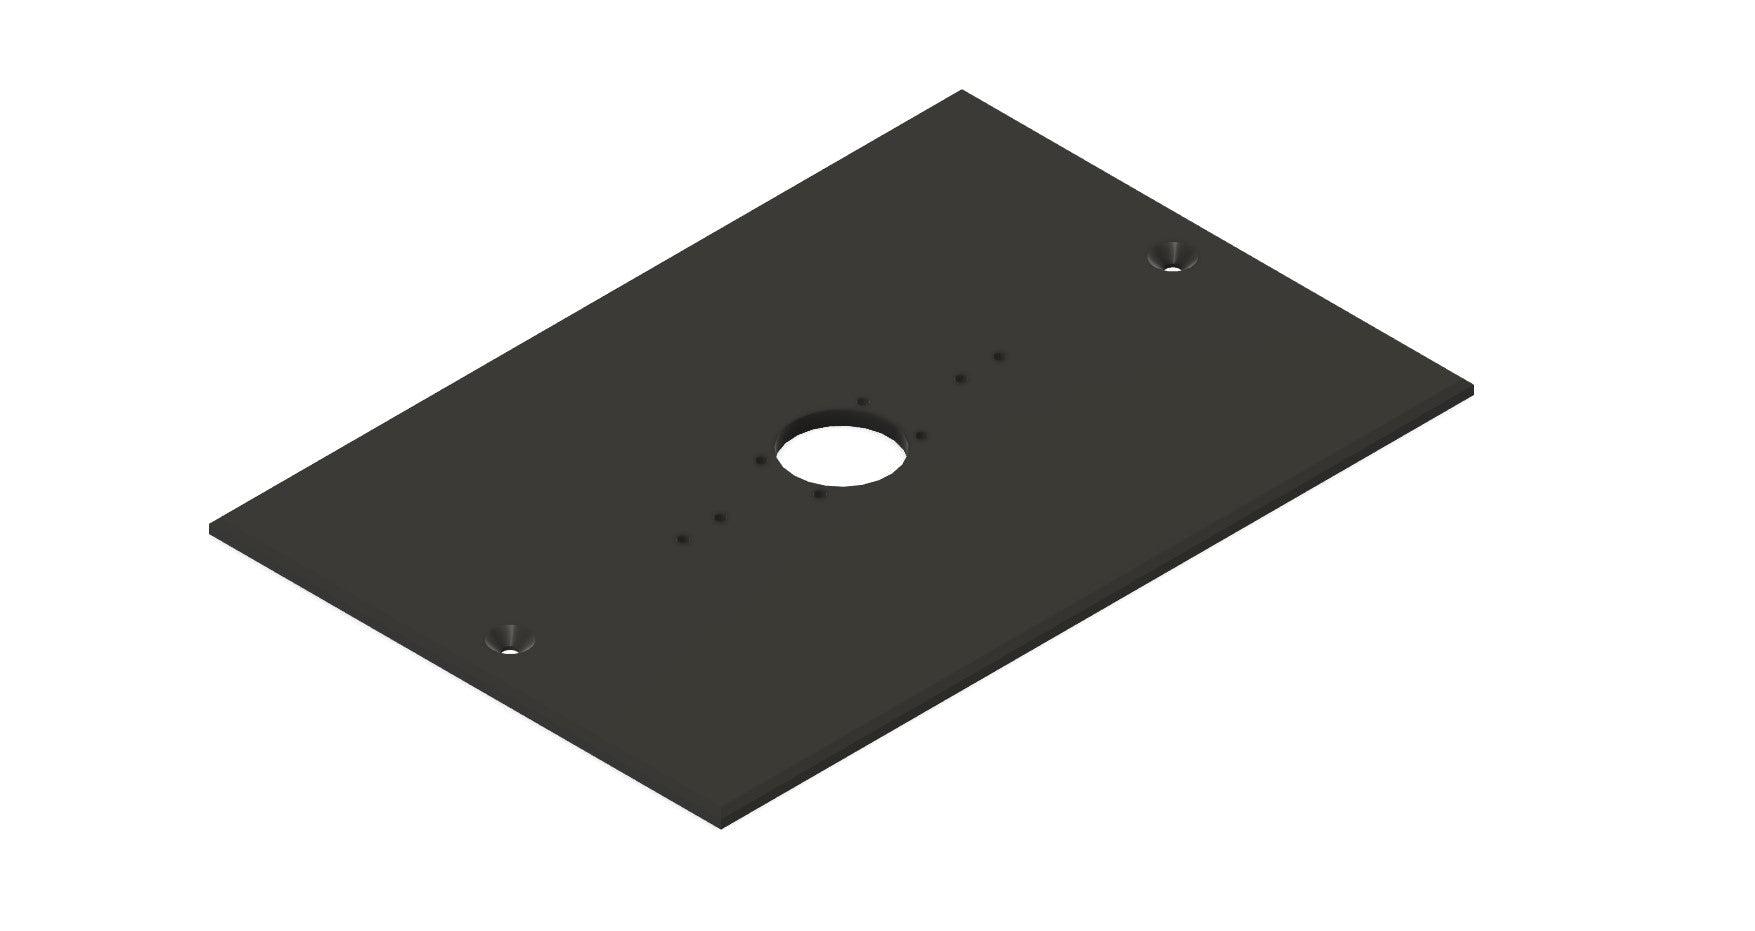 Intercom Cover Plate for Doorbell Mounts